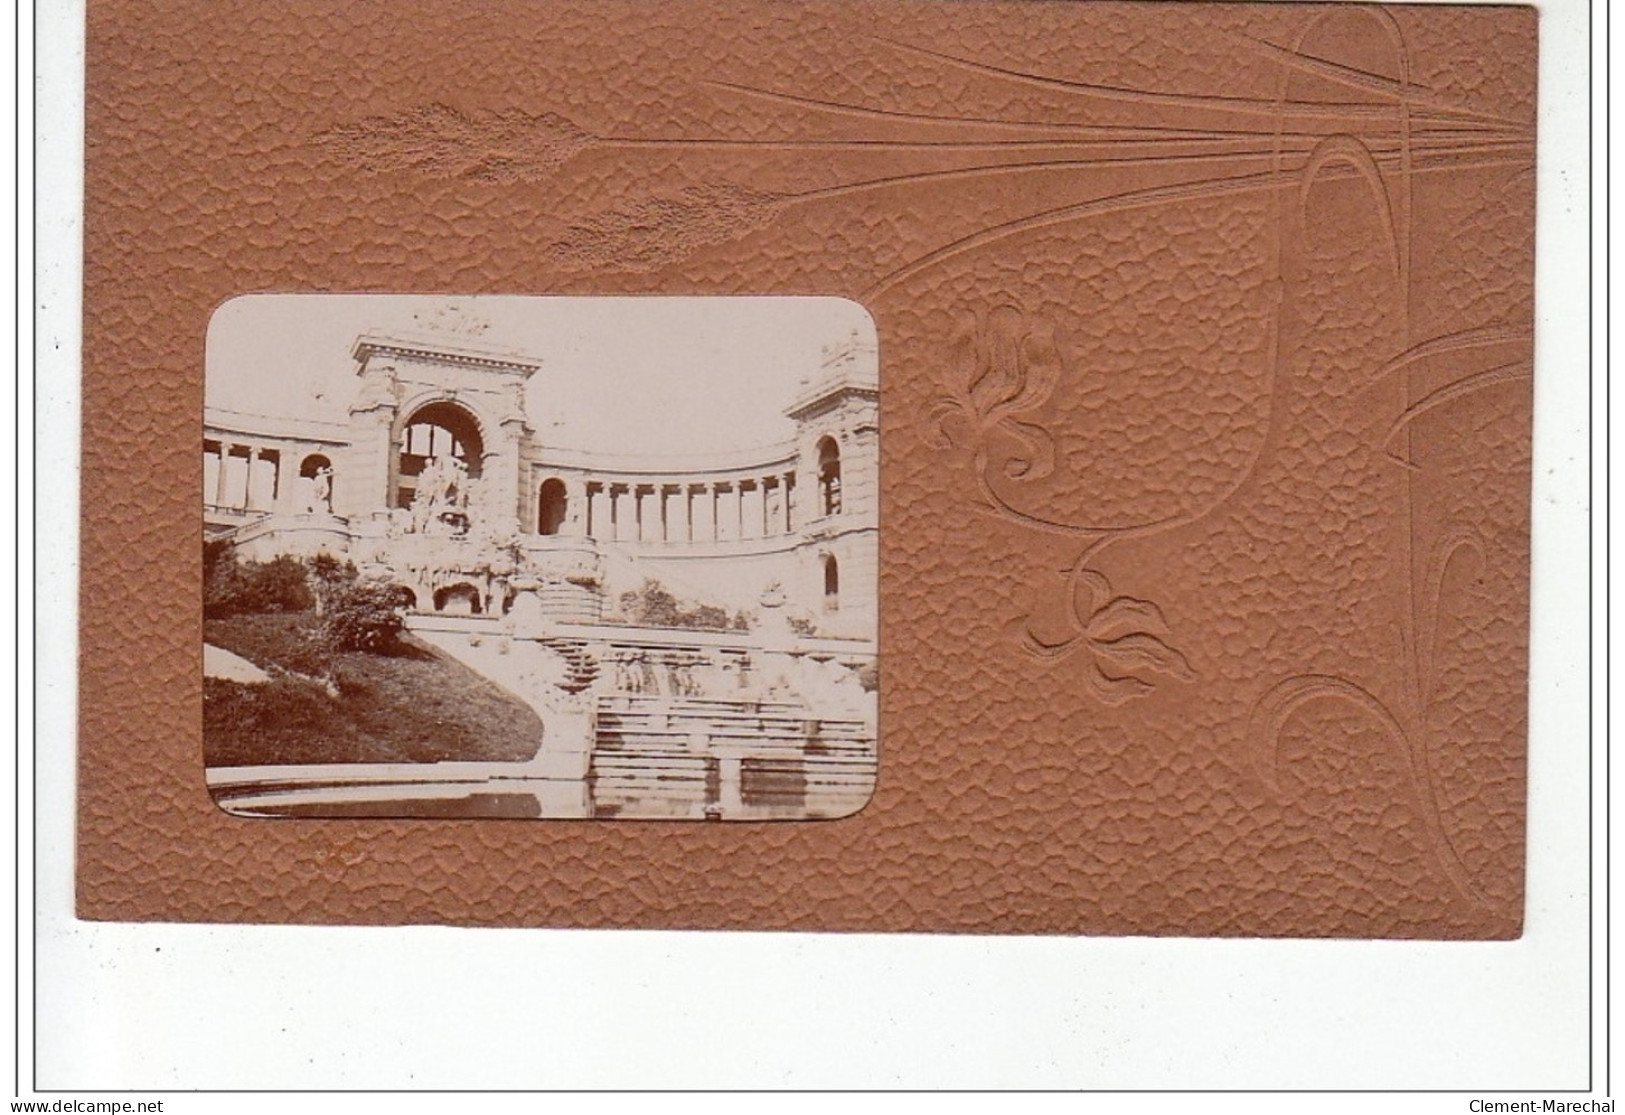 MARSEILLE : série complète de 12 cartes postales photos """"passe partout"""" avec la pochette d'origine - très bon état